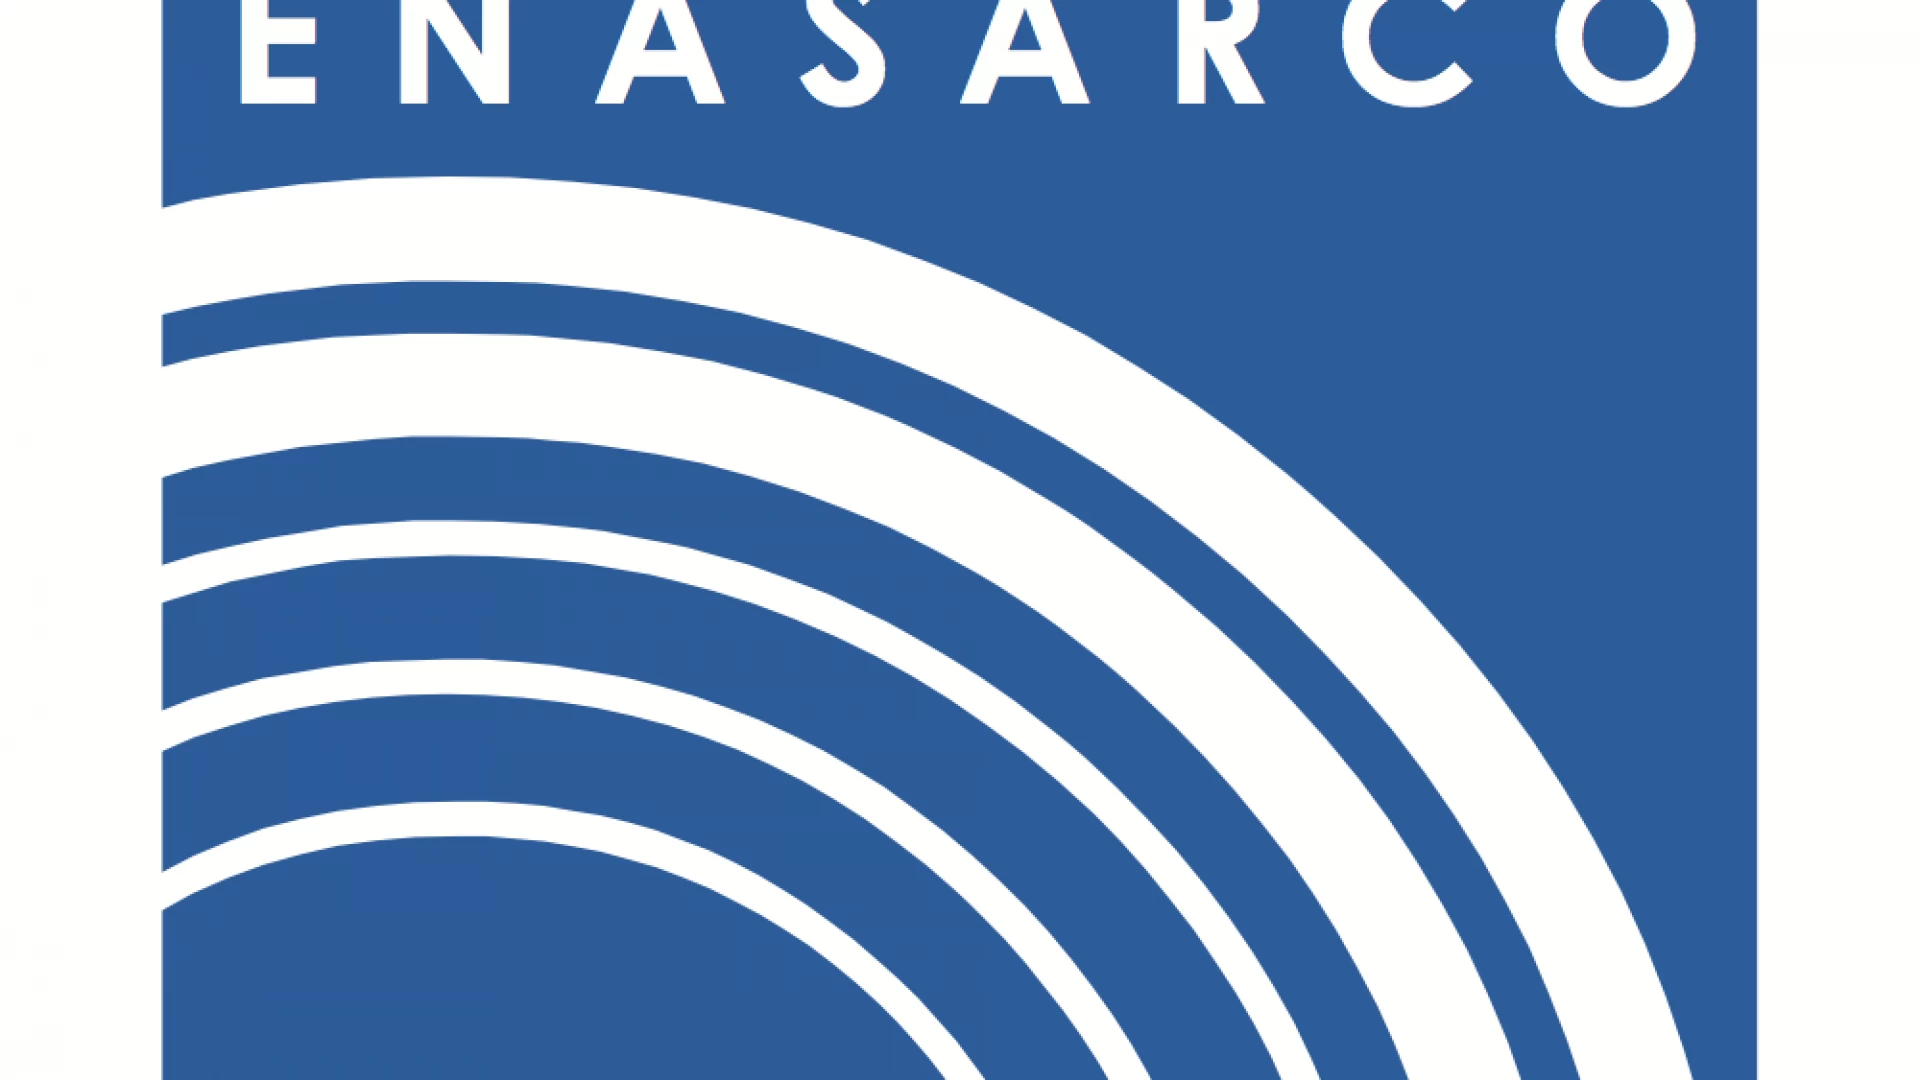 Fondazione Enasarco Il CdA approva il Bilancio Consuntivo 2021: il patrimonio complessivo supera gli 8 miliardi